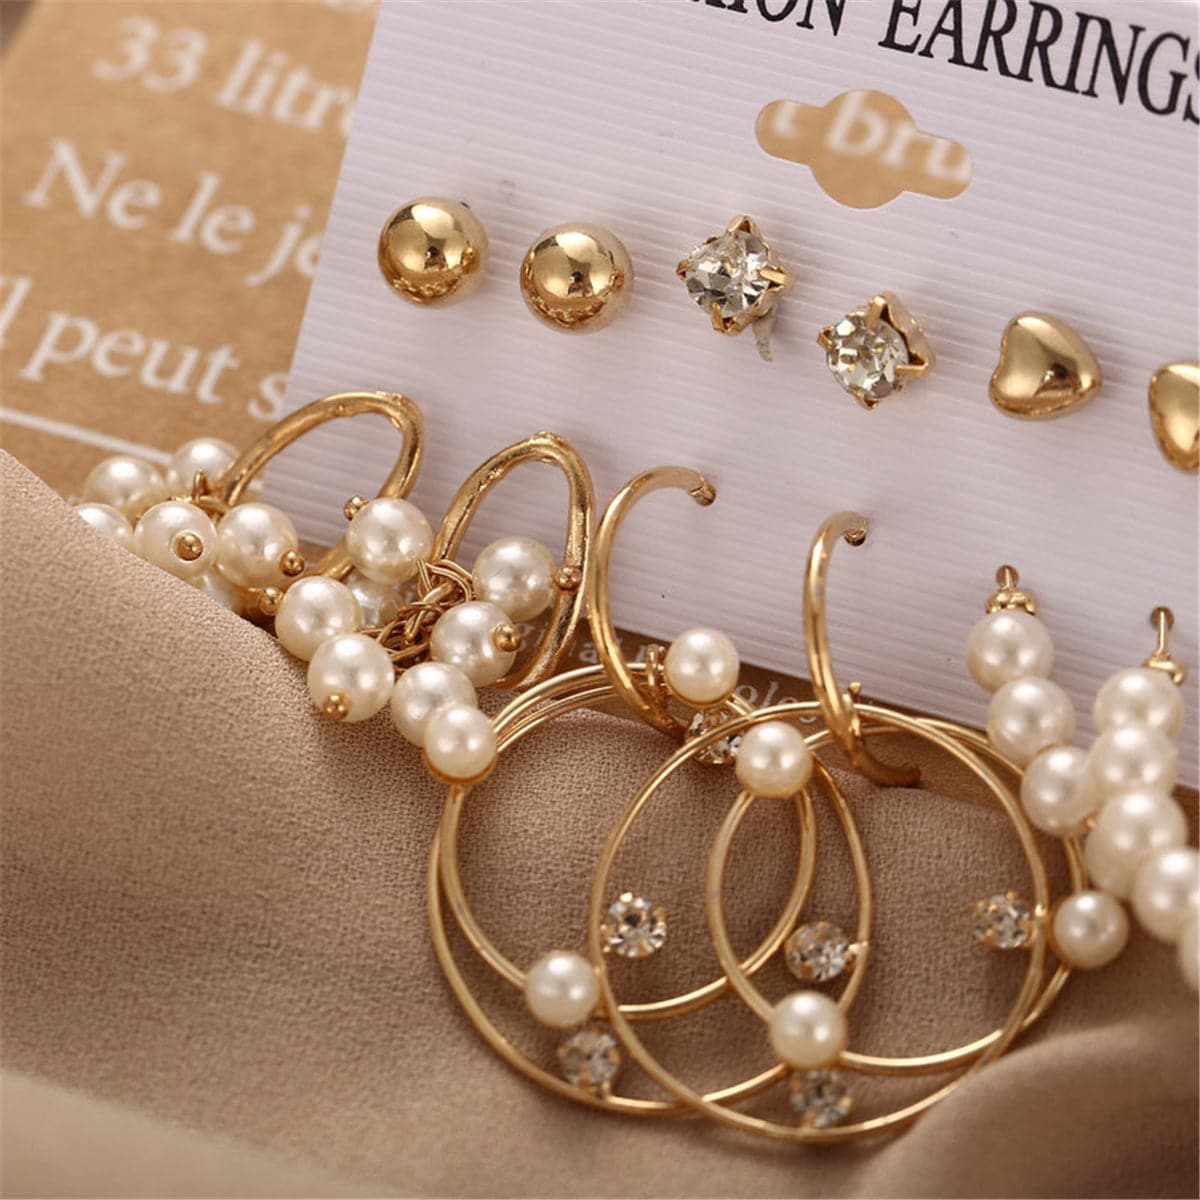 Pearl & Cubic Zirconia 18K Gold-Plated Hoop Earrings Set